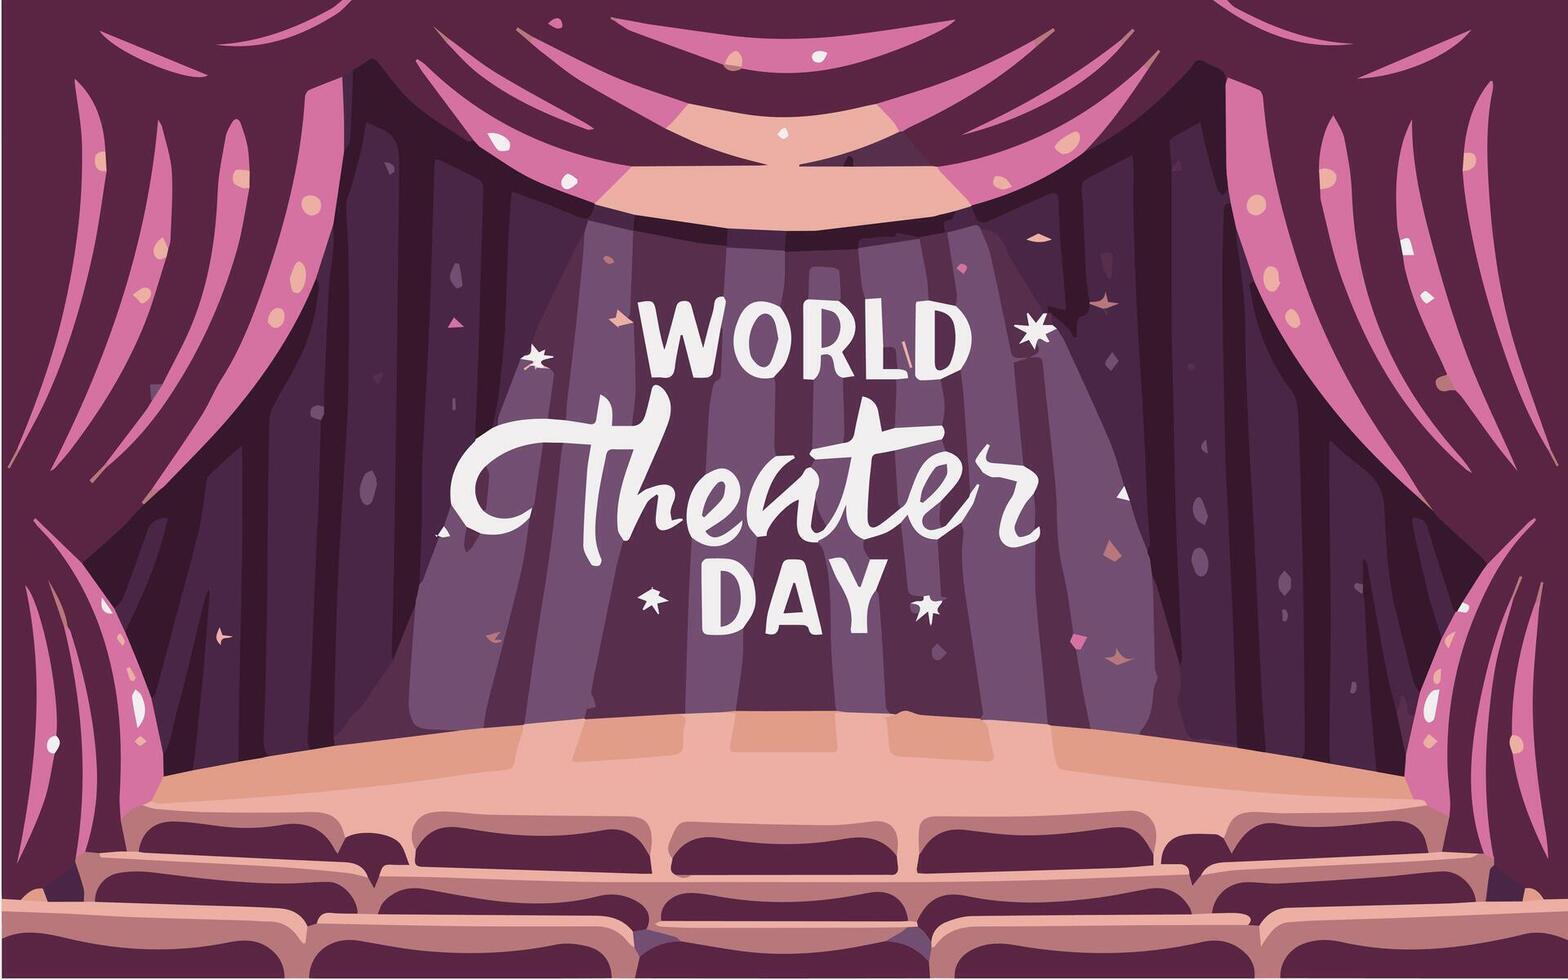 värld teater dag, Mars 27, konceptuell hälsning kort, med ridå och skede med röd sammet ridå. värld teater dag baner design vektor